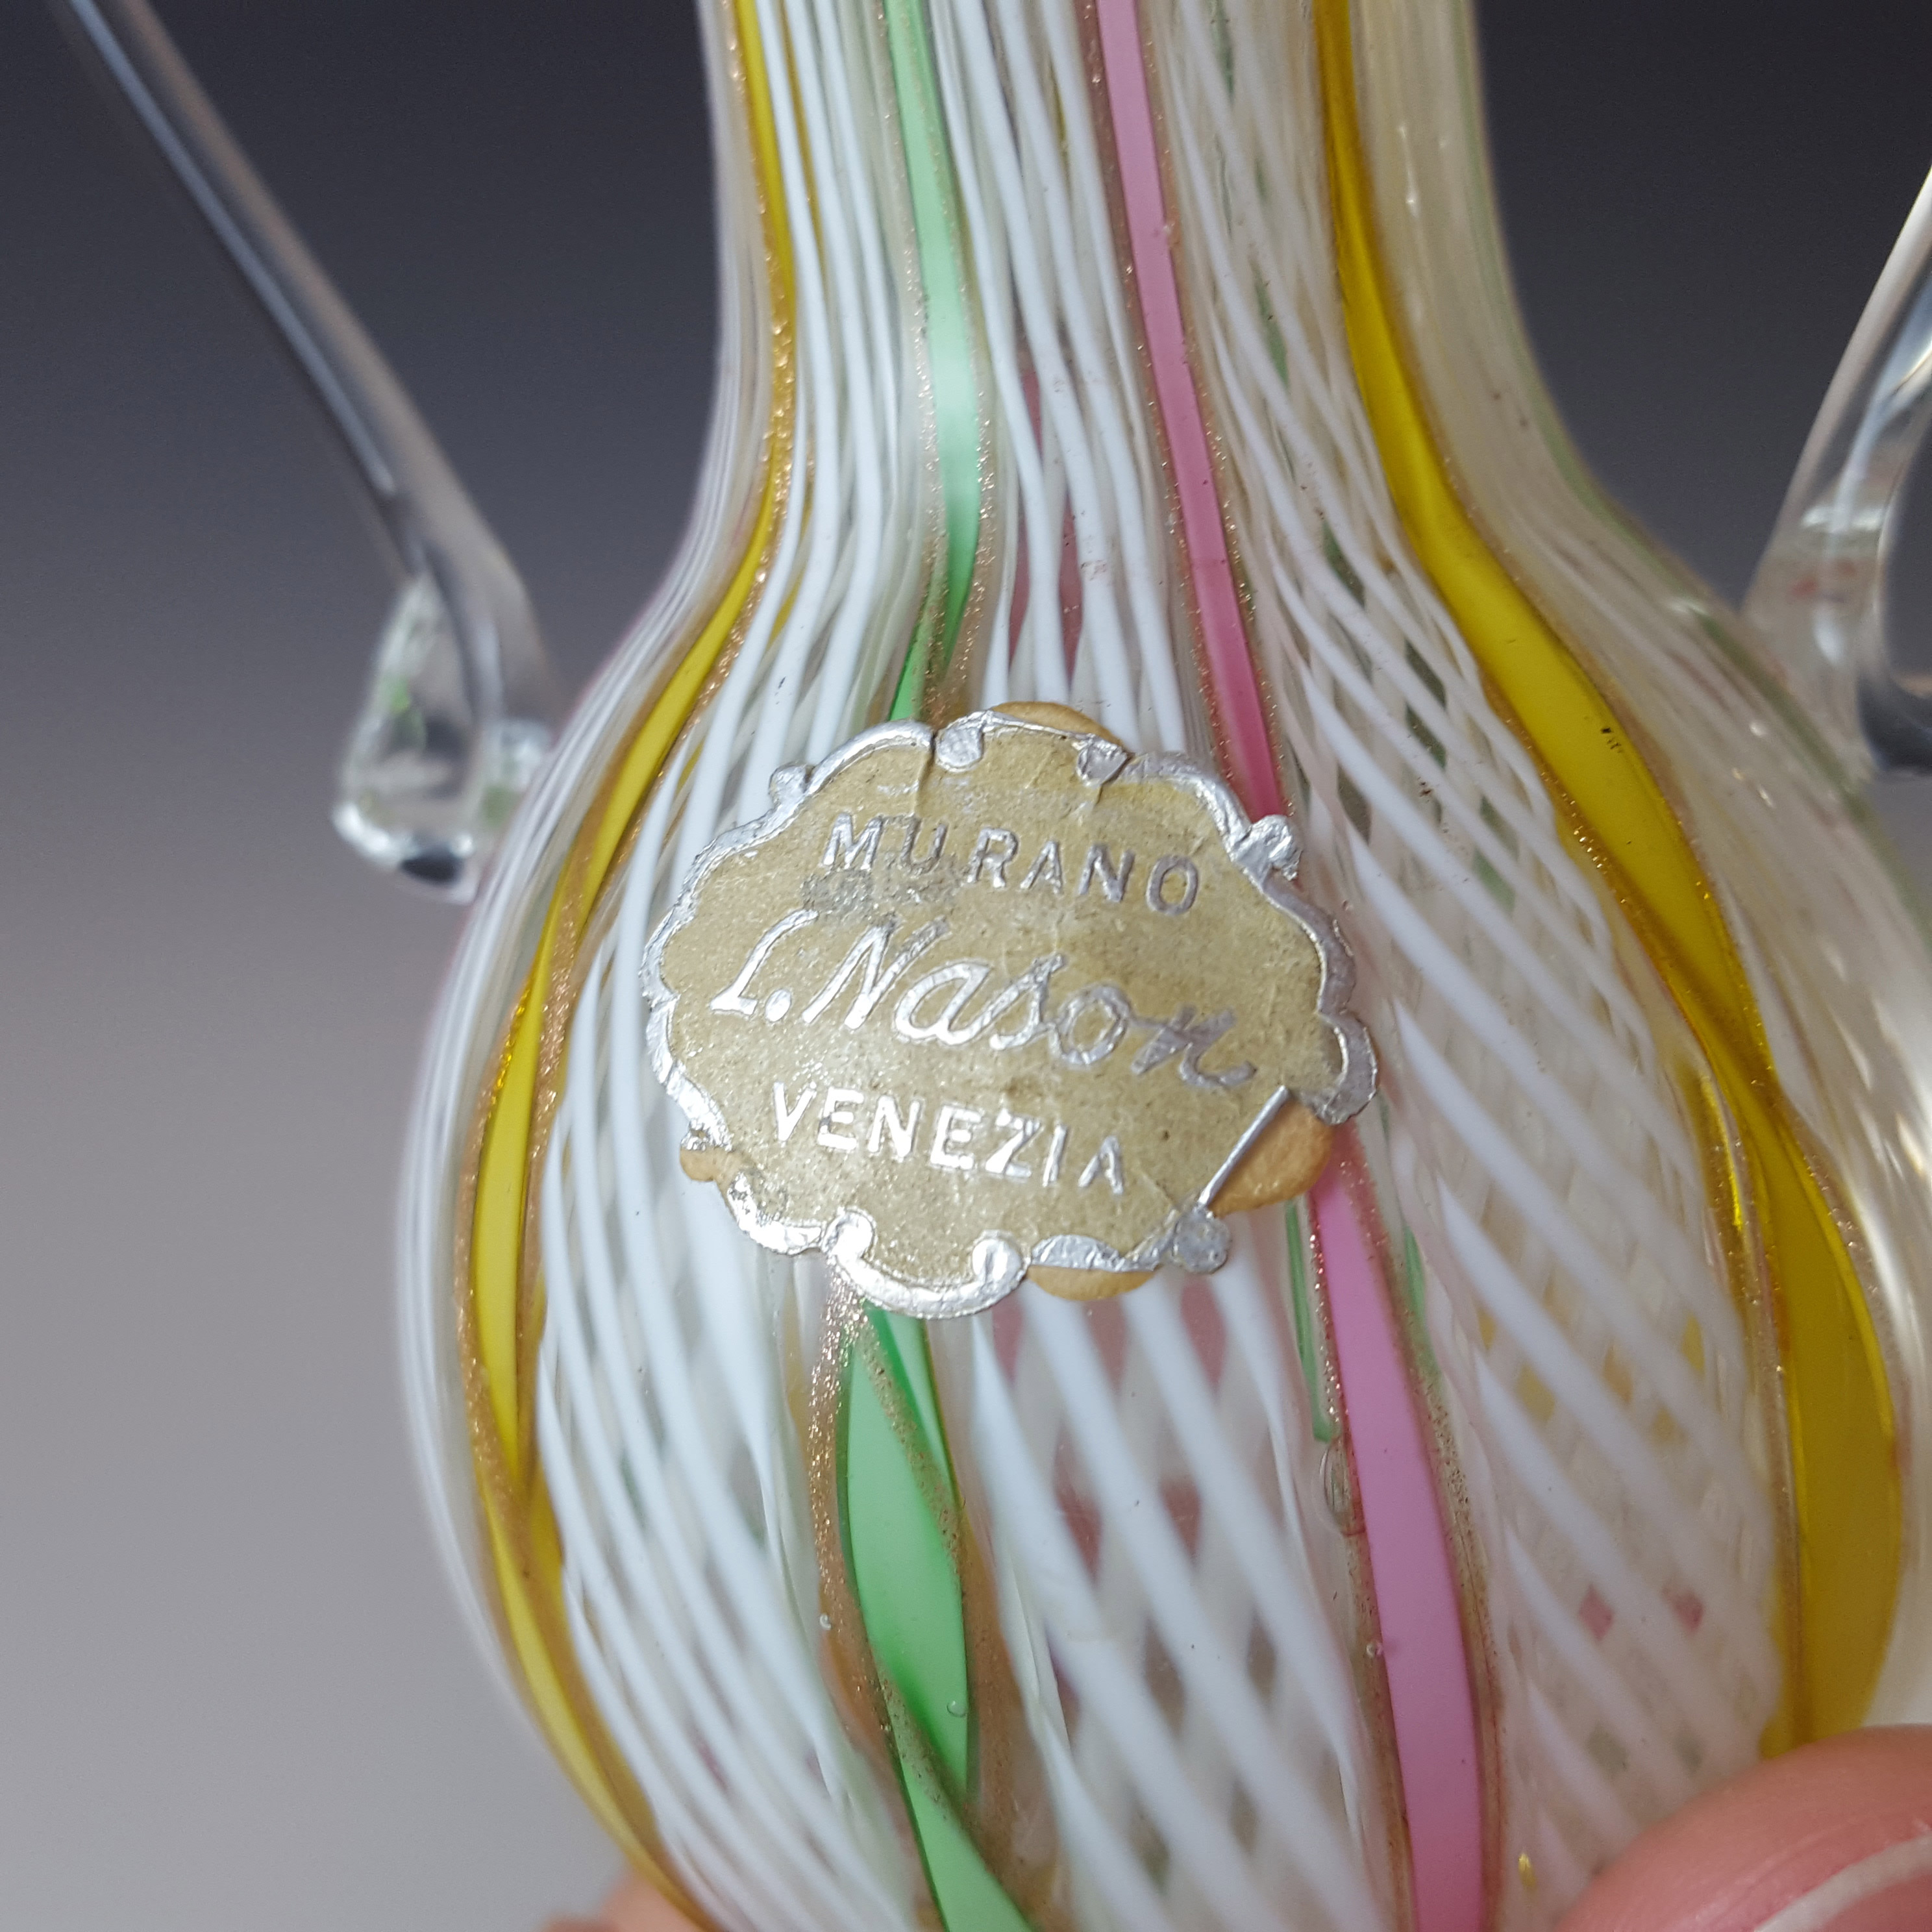 L Nason Murano Zanfirico Filigree & Aventurine Glass Vase - Labelled - Click Image to Close